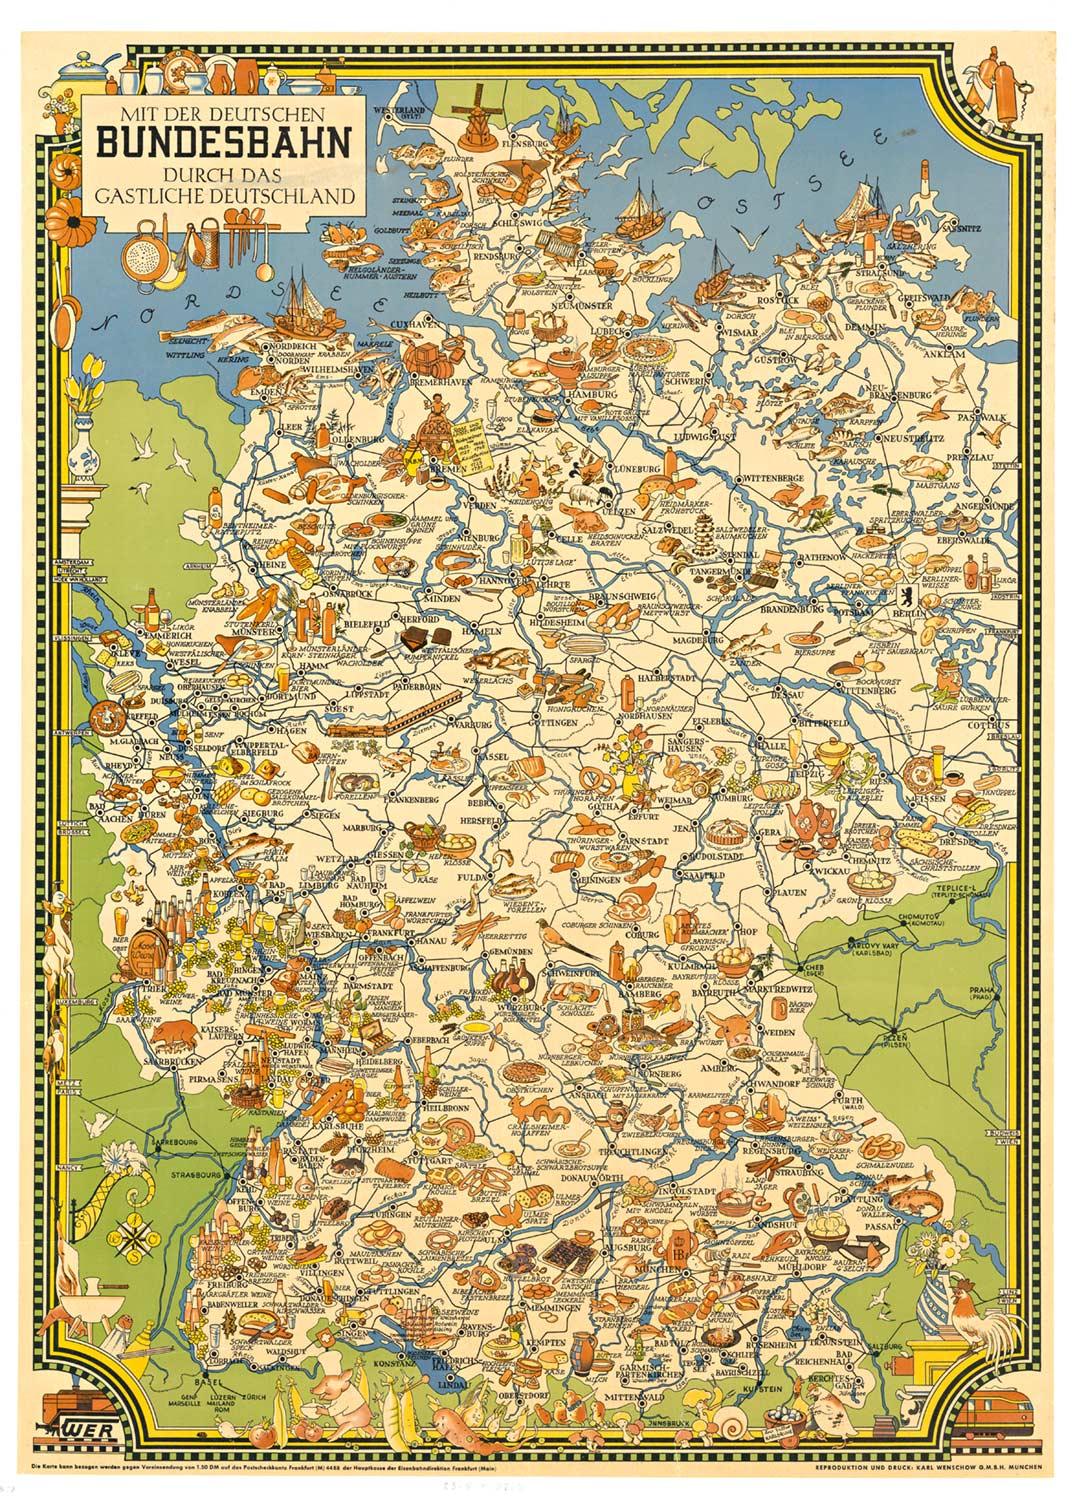 Originales Vintage-Poster „Bundesbahn durch das Gastliches Deutschland“